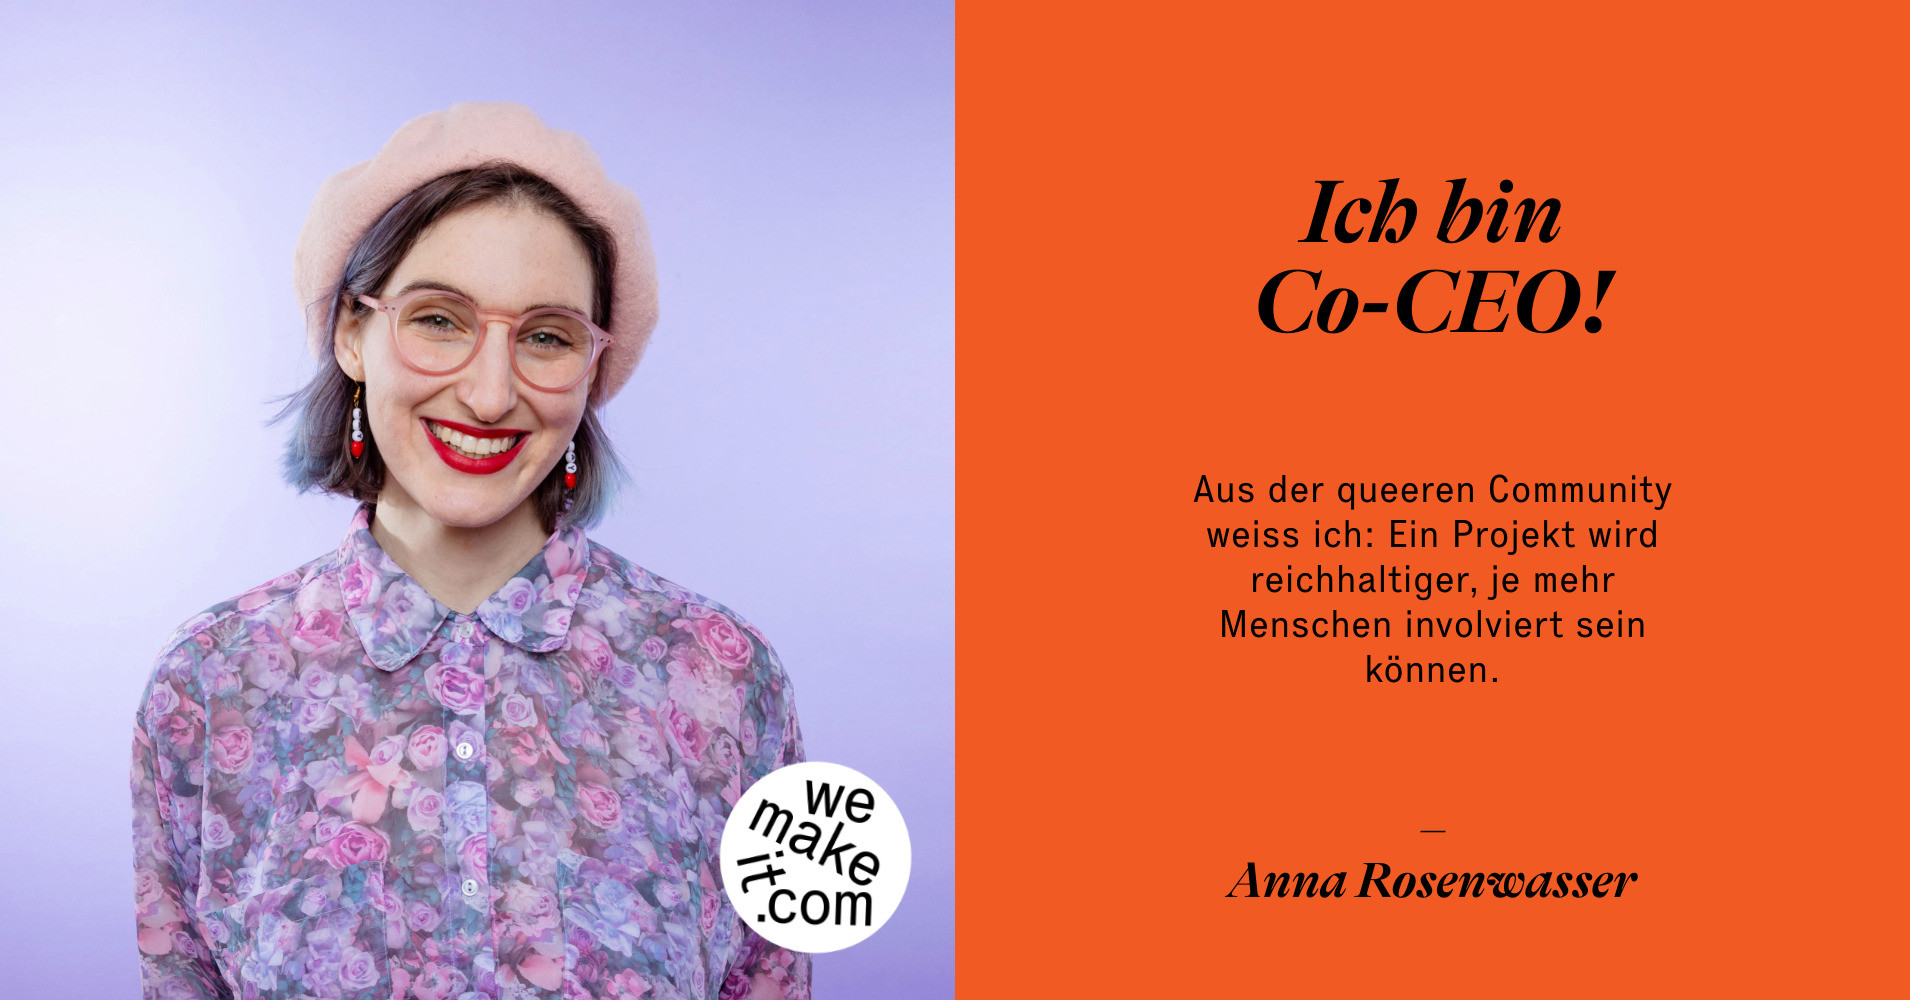 Anna Rosenwasser says Aus der queeren Community weiss ich: Ein Projekt wird reichhaltiger, je mehr Menschen involviert sein können.